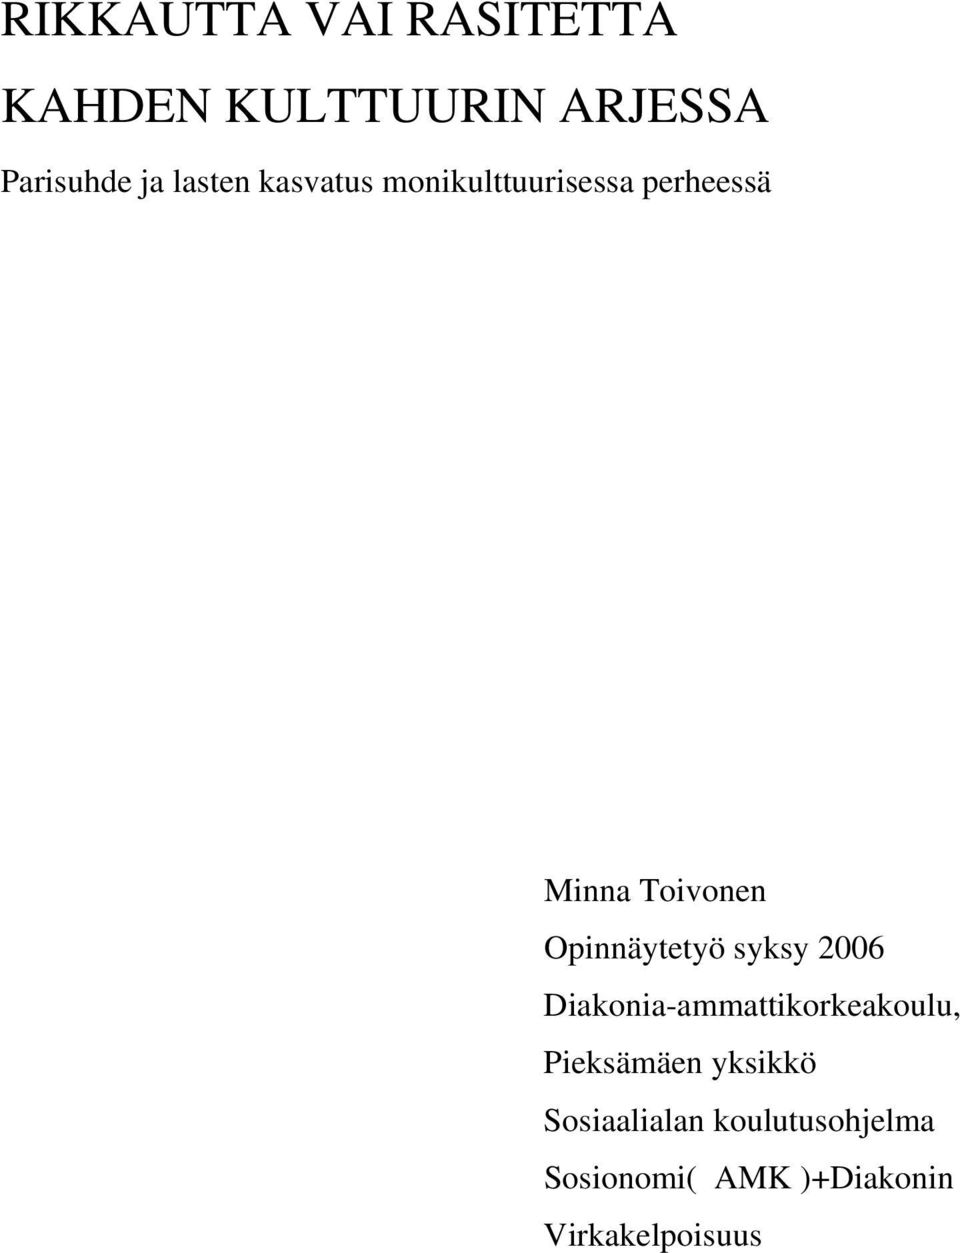 Opinnäytetyö syksy 2006 Diakonia-ammattikorkeakoulu, Pieksämäen